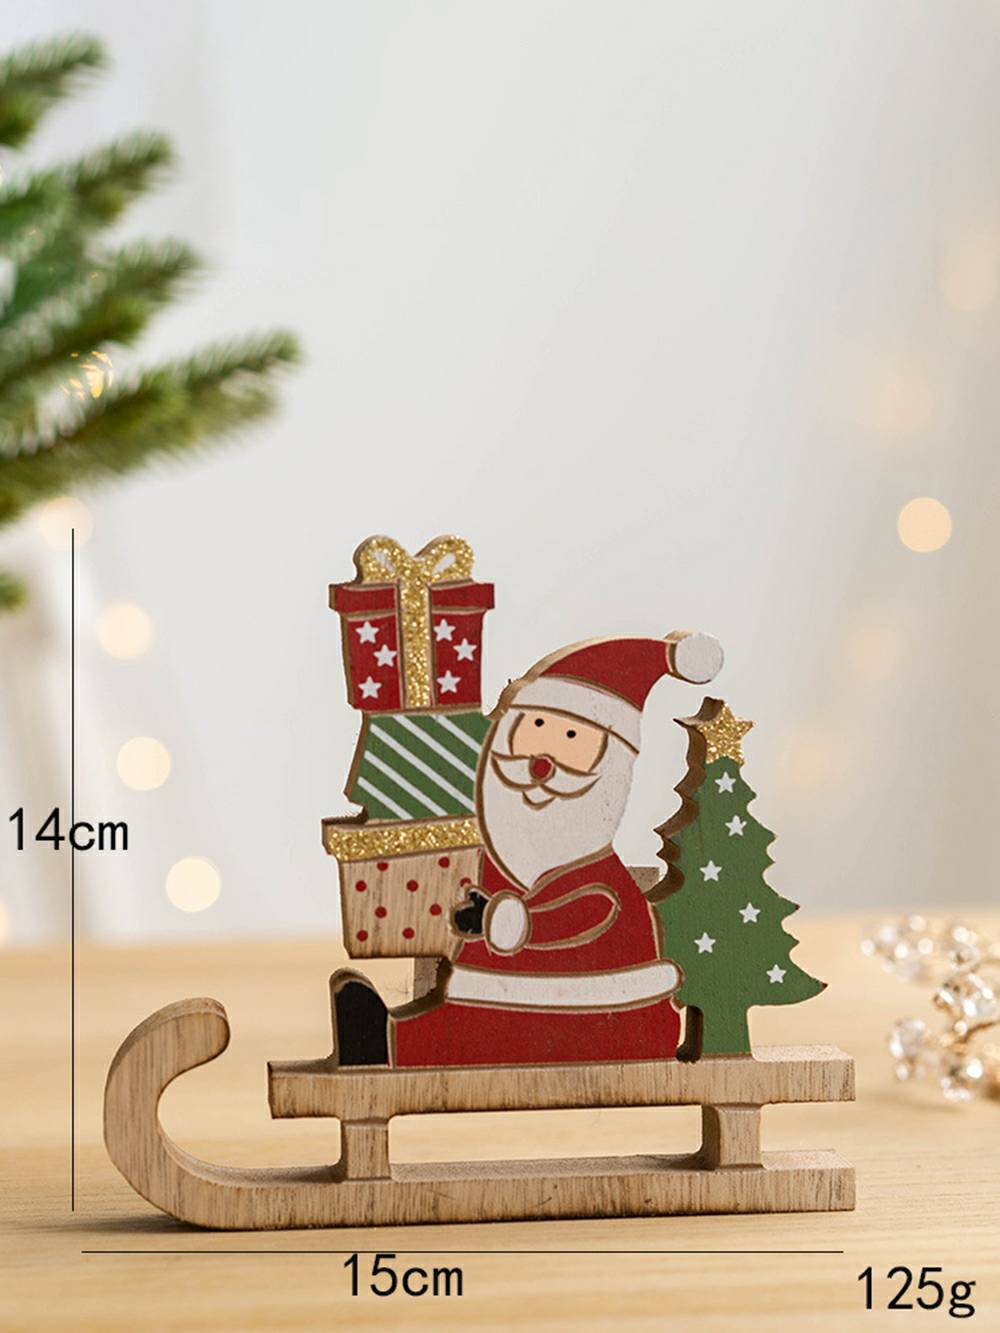 Titolo: Decorazione in legno per atmosfera natalizia